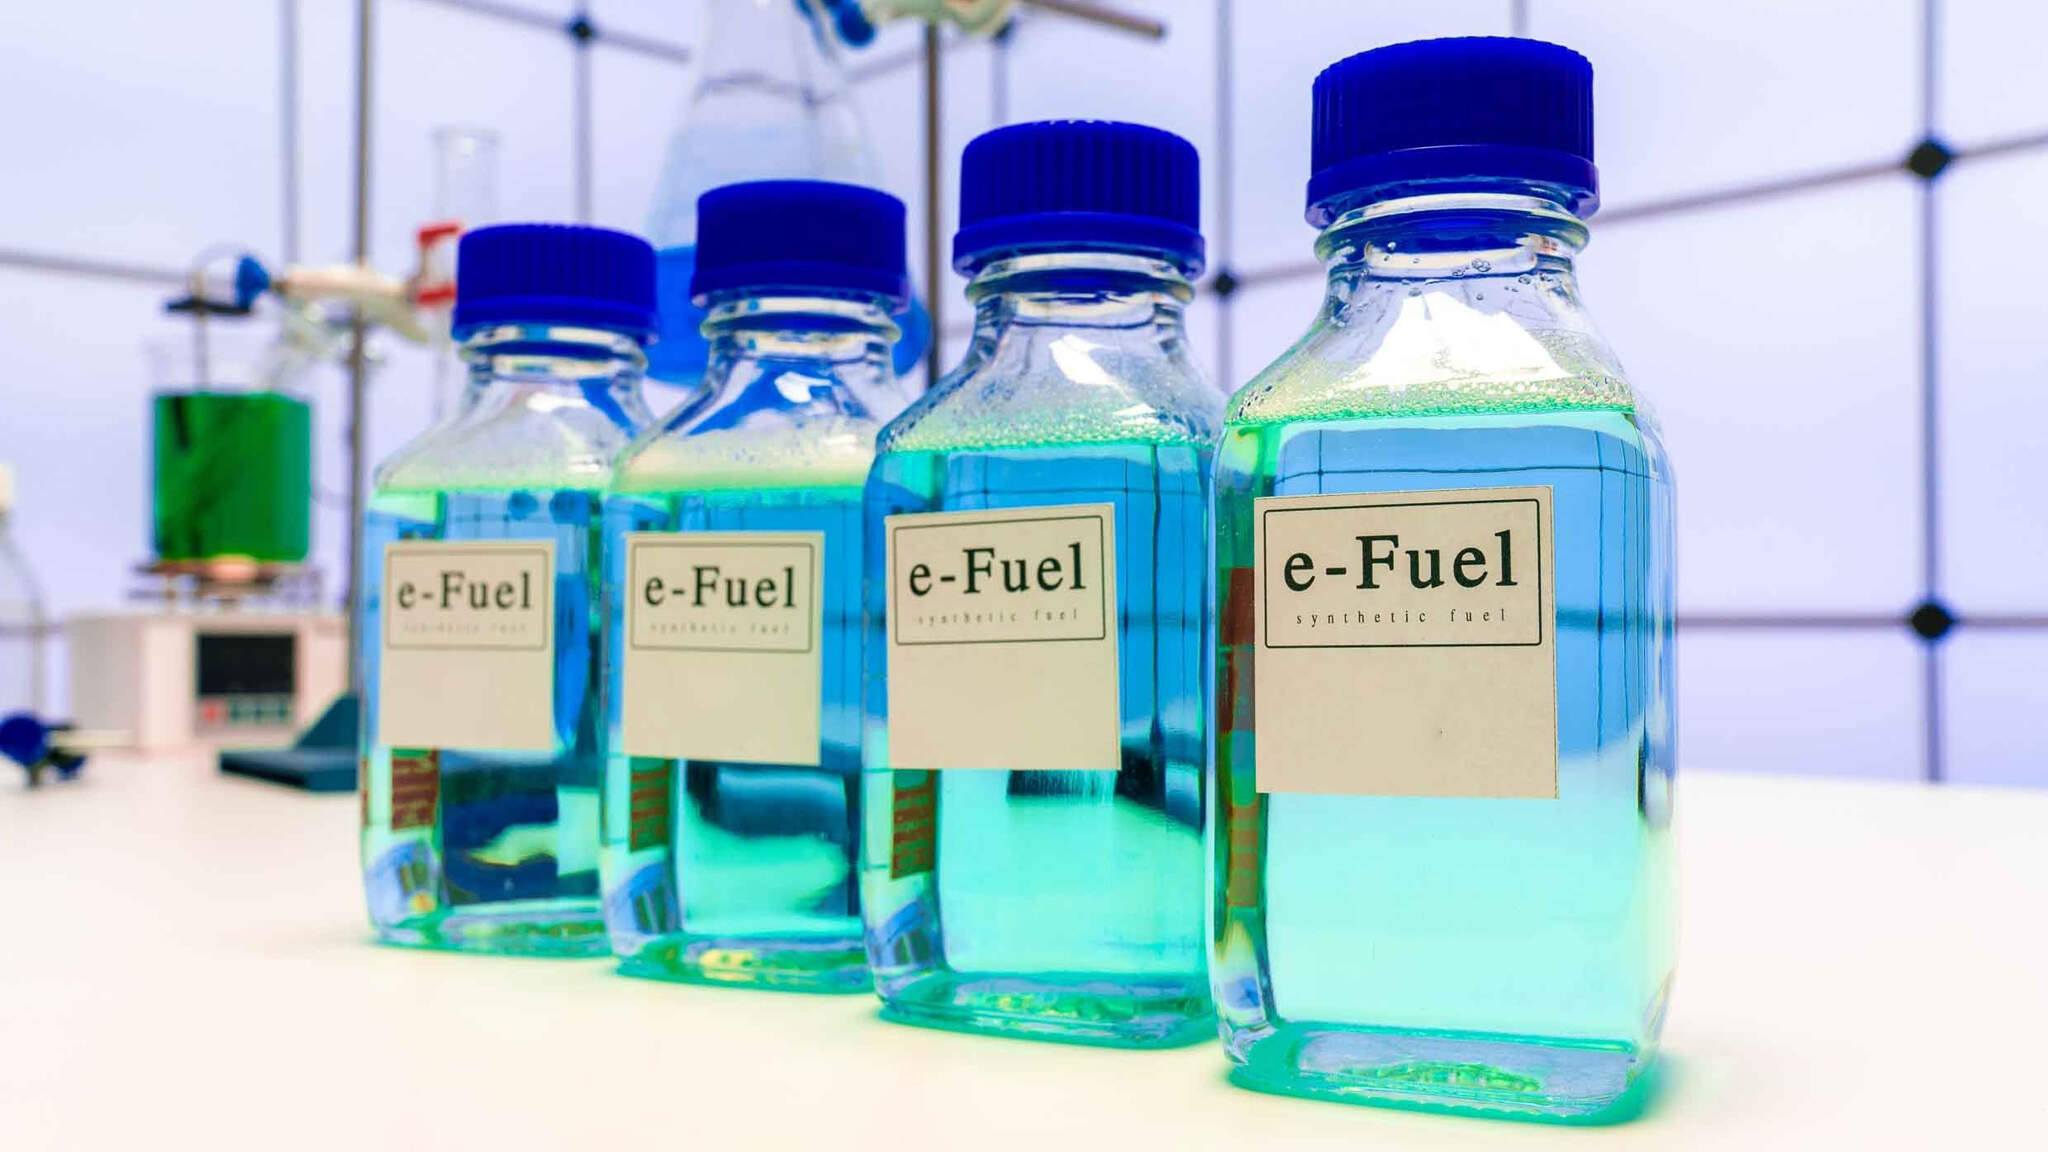 Synthetische brandstoffen zijn klimaatvriendelijk, maar niet de oplossing voor alle vervoerders